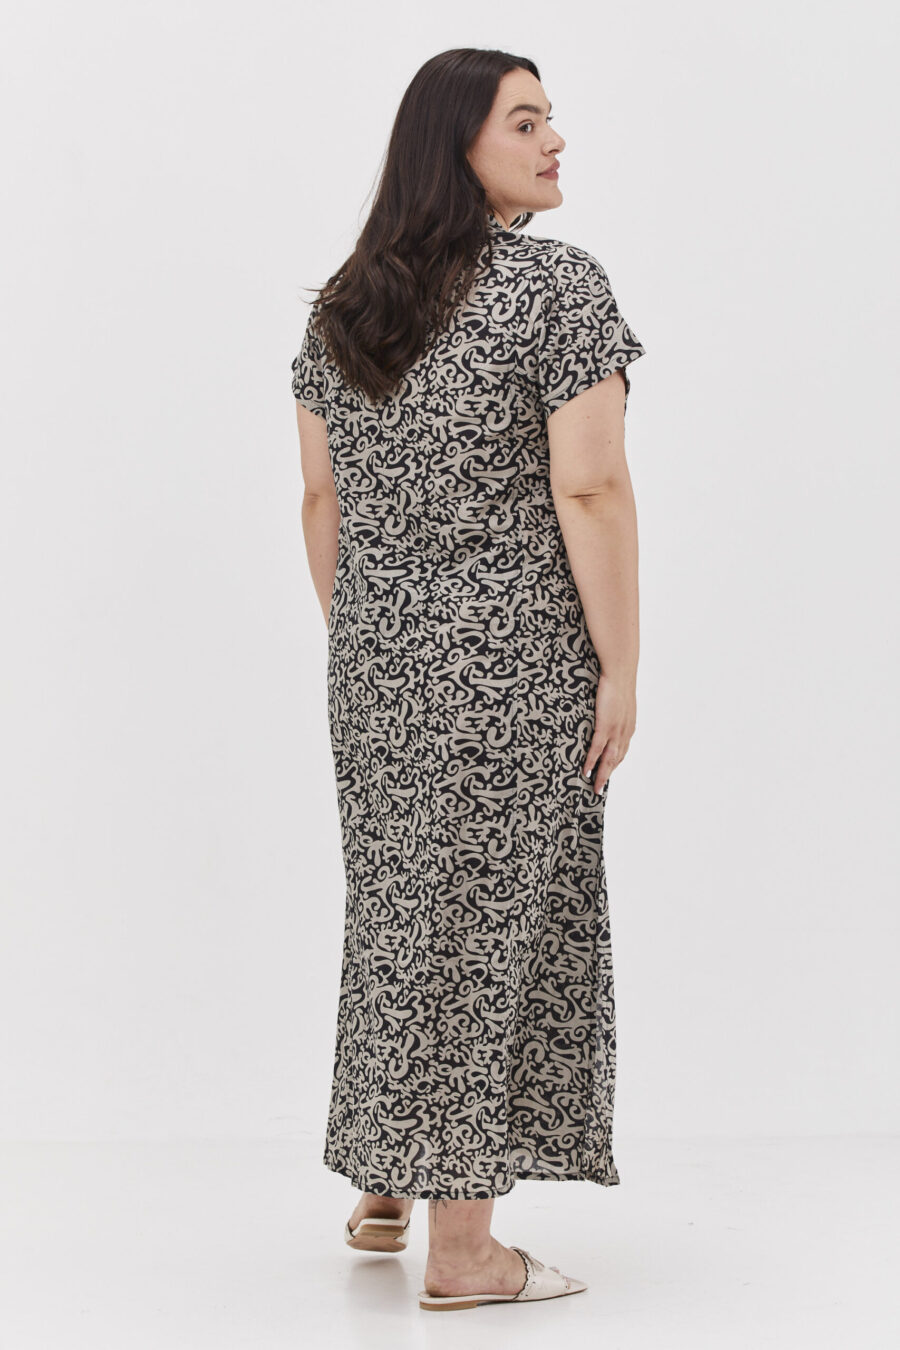 גלביה לנשים | גלבייה בעיצוב ייחודי – פרינט בלאק פנטזי, שמלה שחורה עם הדפס מופשט בצבע אפור בהיר.